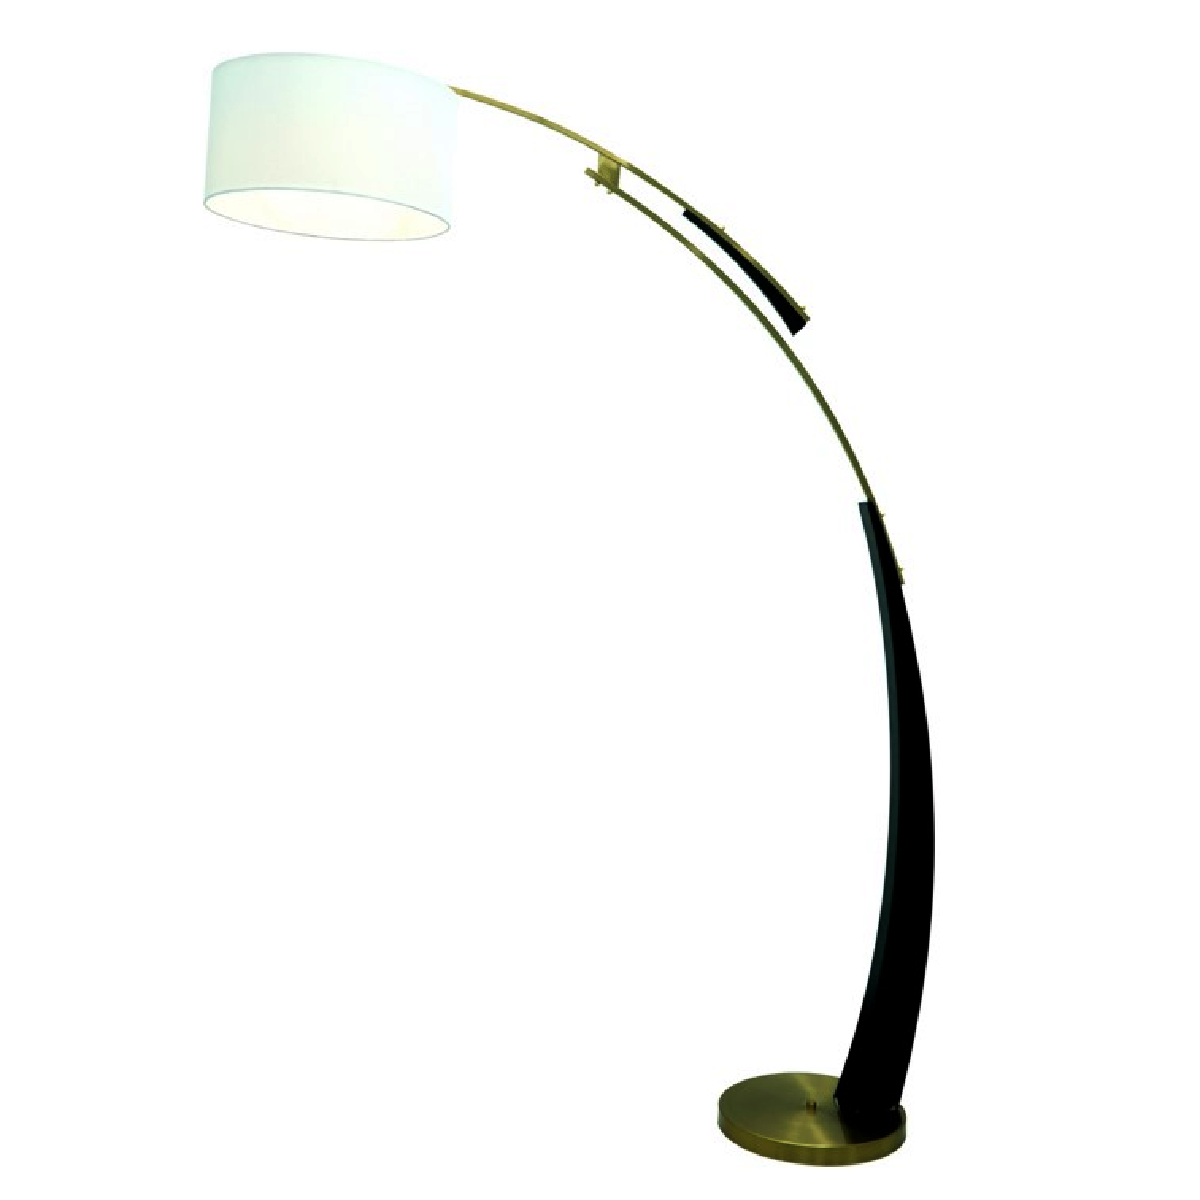 35 - DD15: Đèn cây đứng đầu giường/ bàn - KT: W1200mm x H1800mm - Bóng đèn E27 x 1 bóng